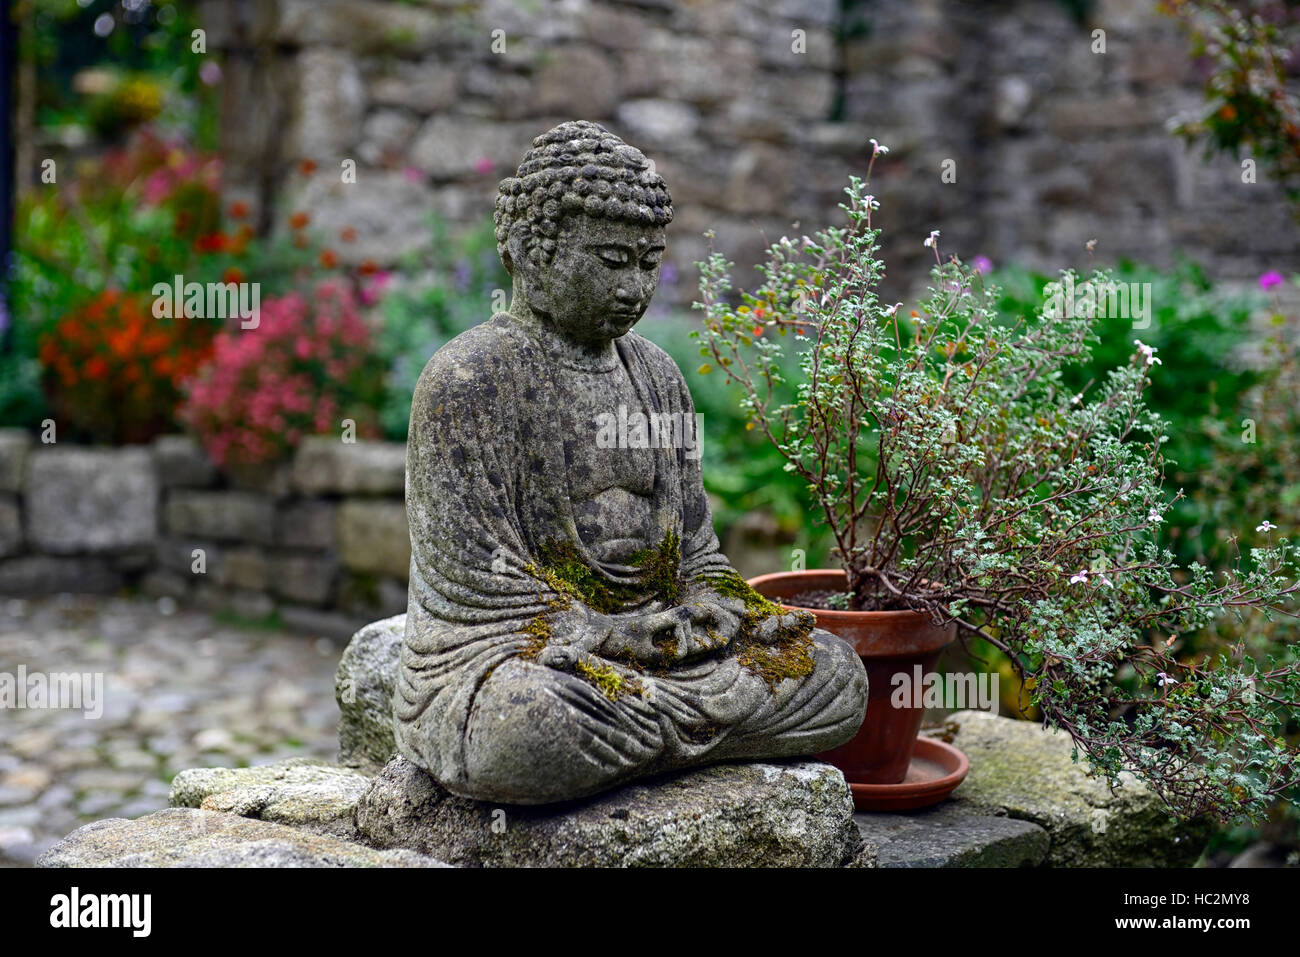 Buddha Statue Garten Terrasse betrachten meditieren Stille ruhige Garten Gartenarbeit RM Floral Stockfoto